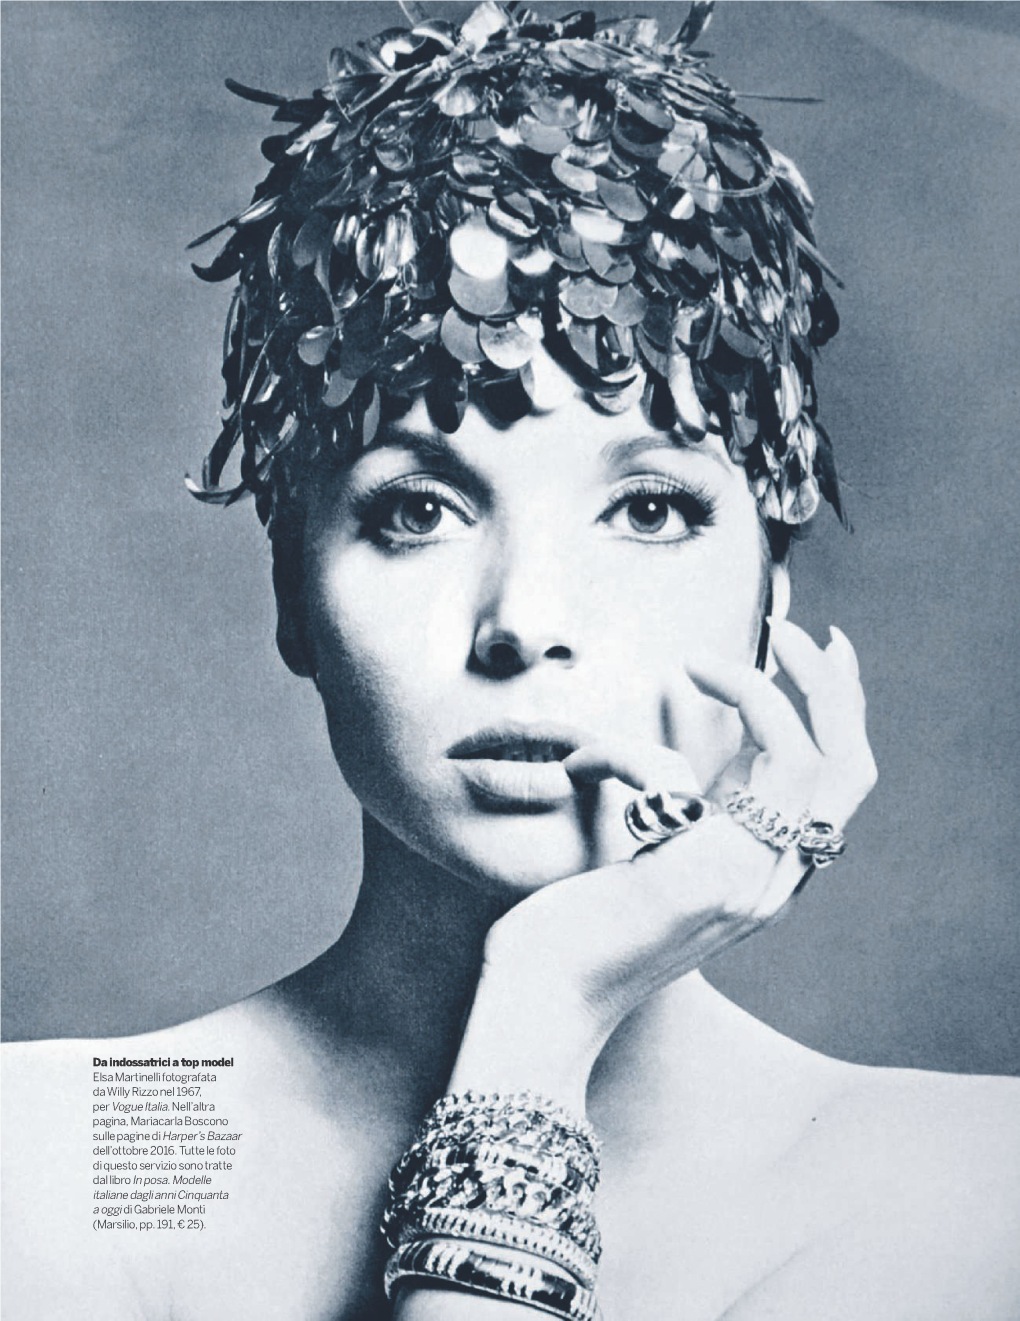 Da Indossatrici a Top Model Elsa Martinelli Fotografata Da Willy Rizzo Nel 1967, Per Vogue Italia